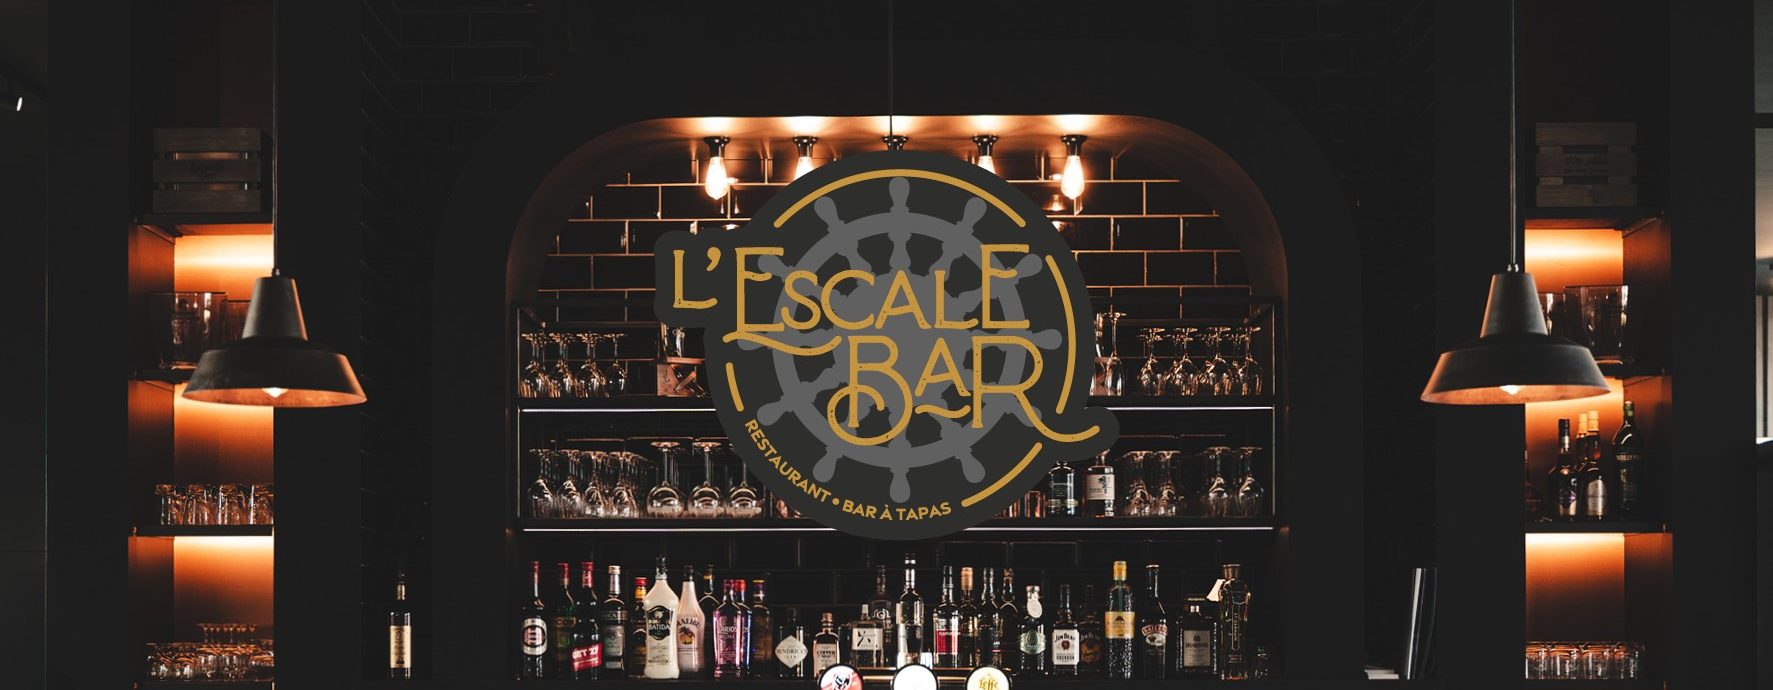 Bar de l'escale bar avec logo